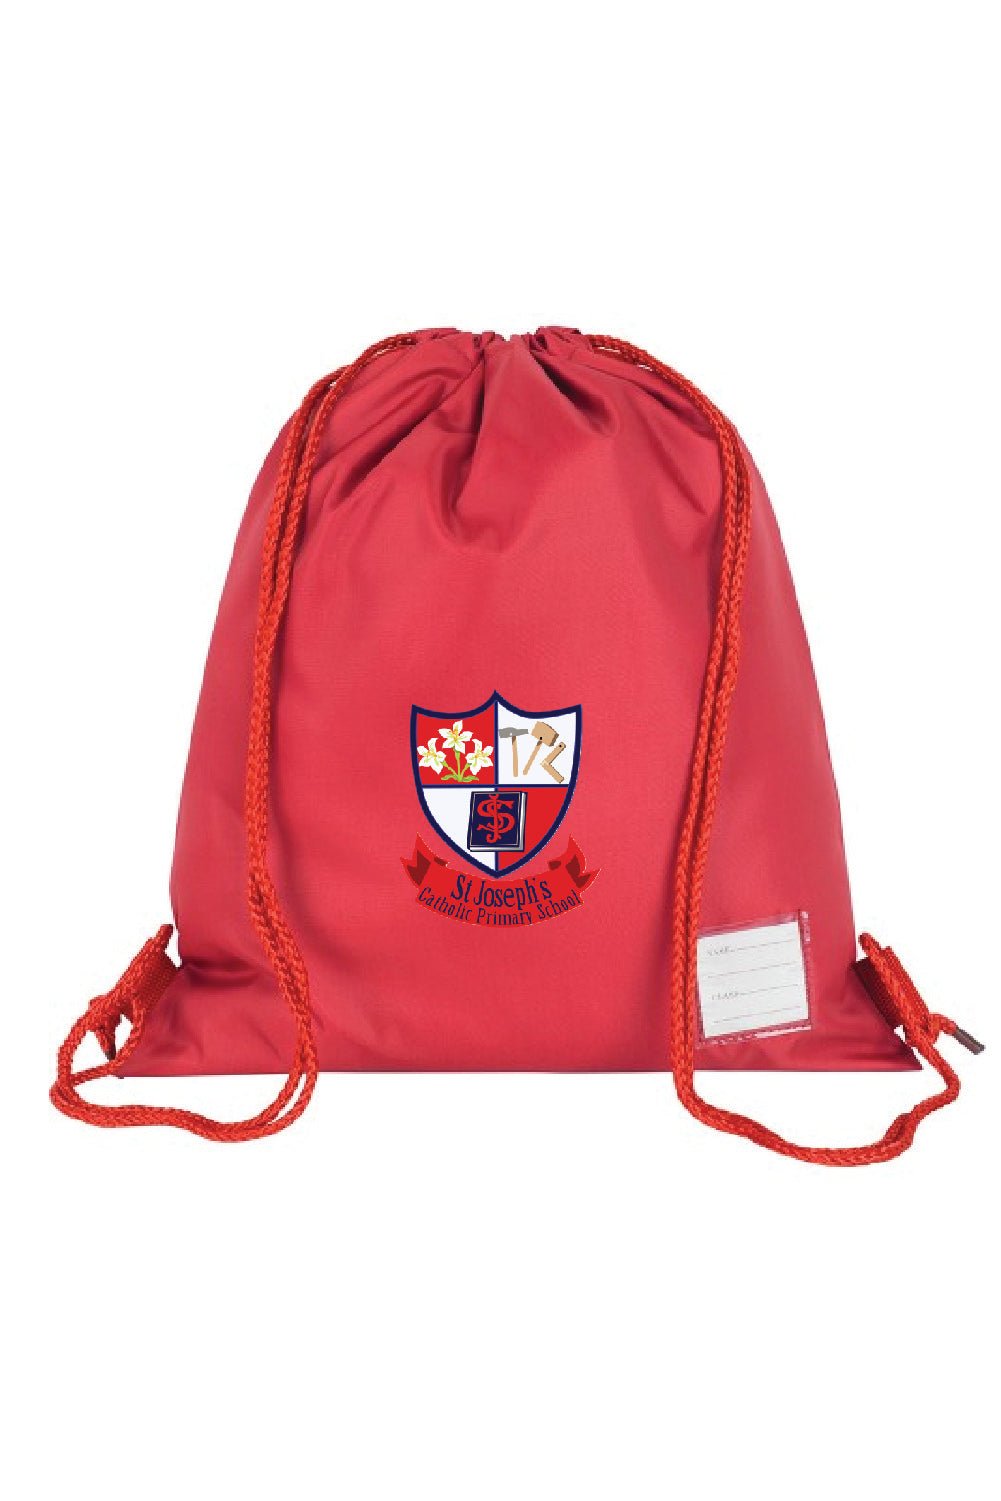 S.J PE Bag - Uniformwise Schoolwear